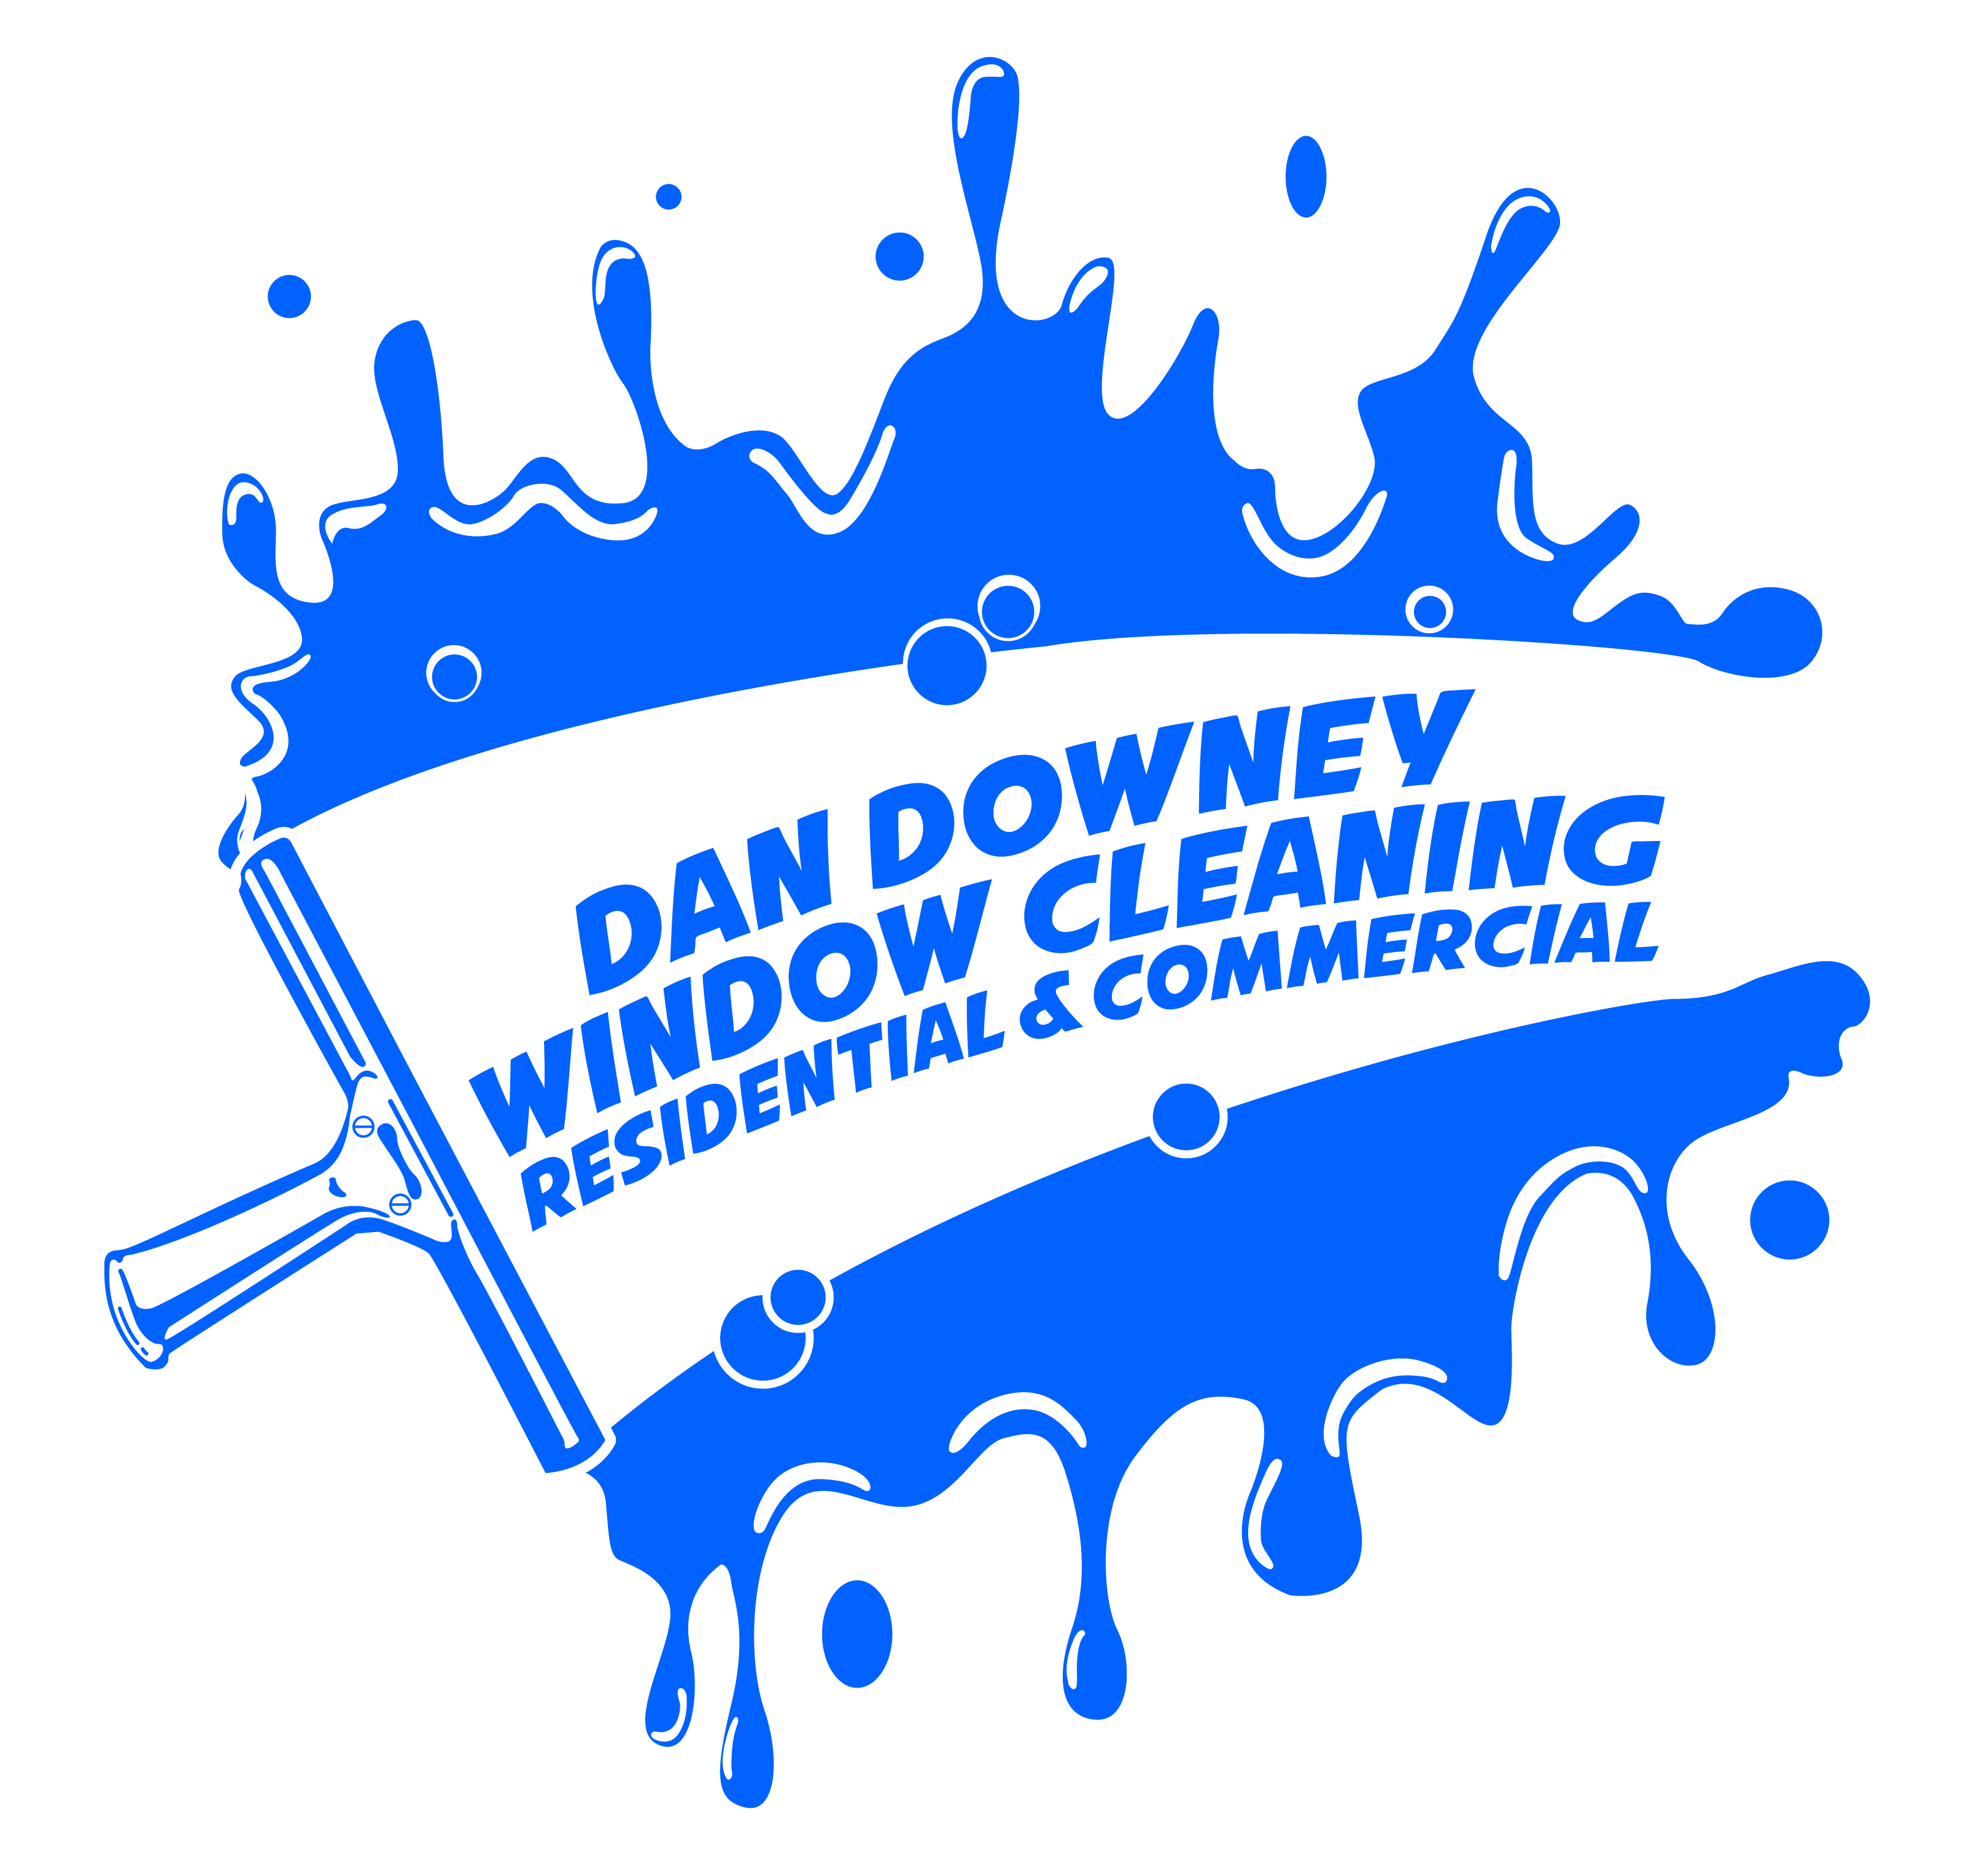 Dan Downey Window Cleaning